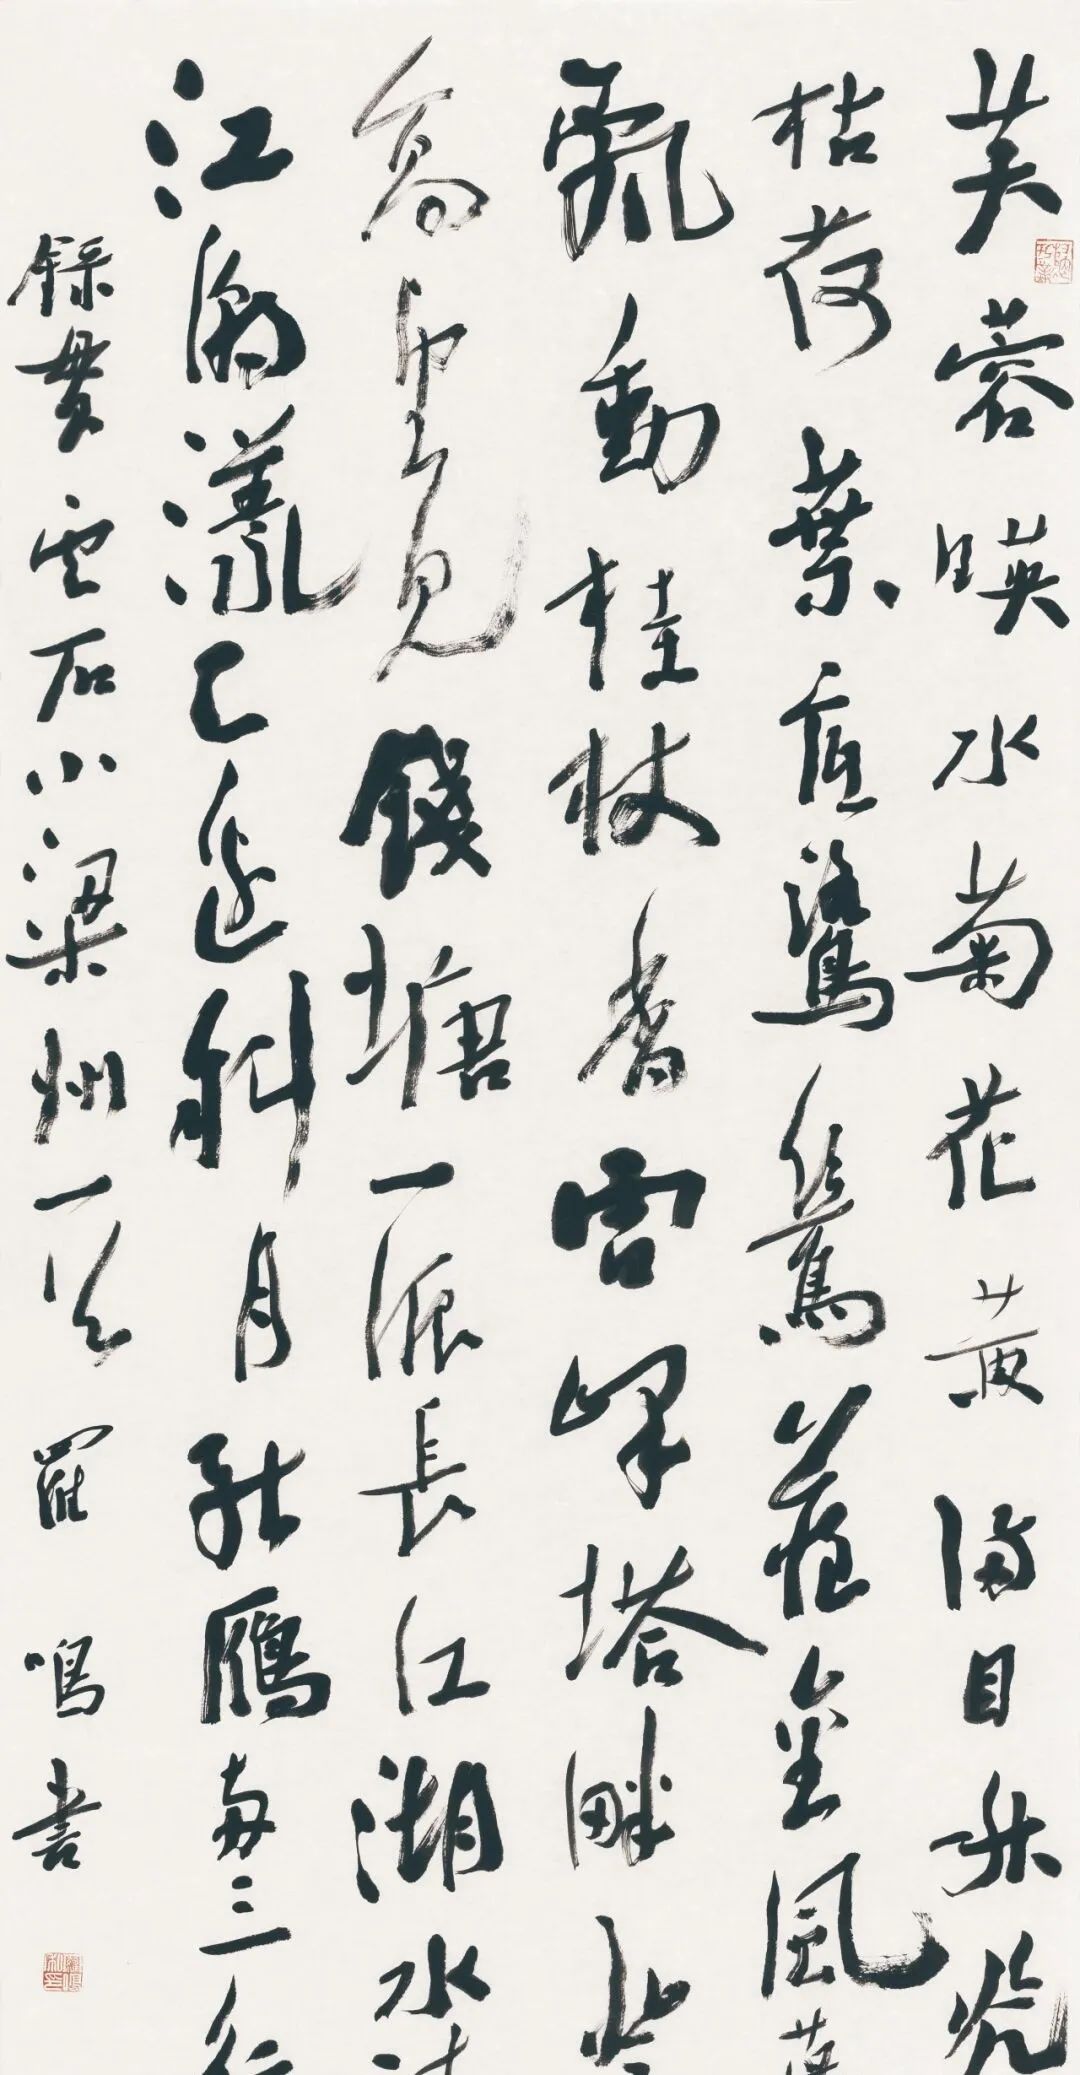 藏·展览丨纸笺传情，笔墨放歌——河南书法名家邀请展 · 参展名家介绍（4）(图5)